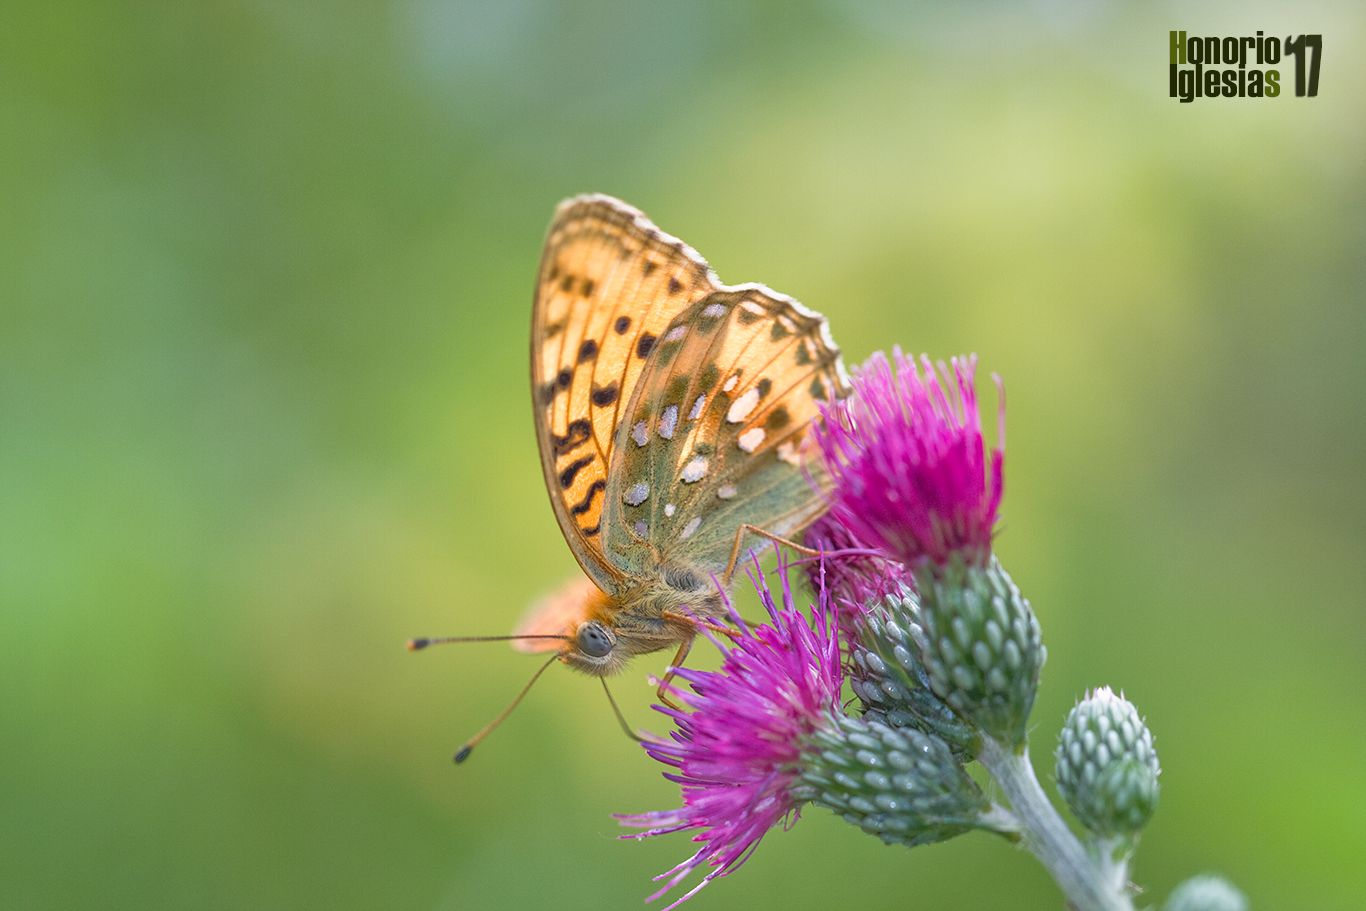 Reverso de mariposa nacarada aglaja o lunares de plata (Argynnis (=Mesoacidalia) aglaja) libando sobre la flor de un cardo